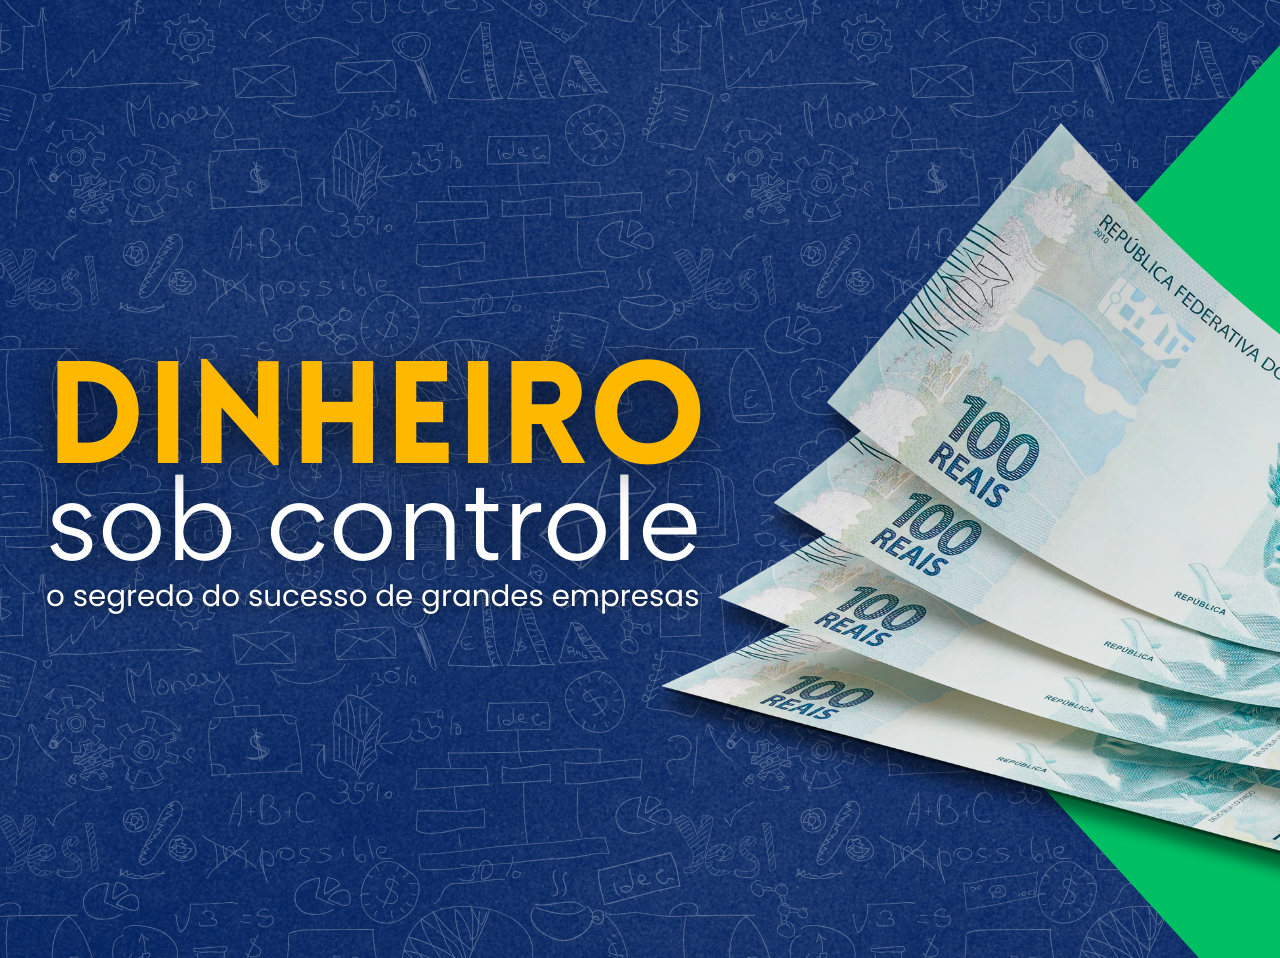 You are currently viewing Dinheiro sob controle: O segredo do sucesso de grandes empresas